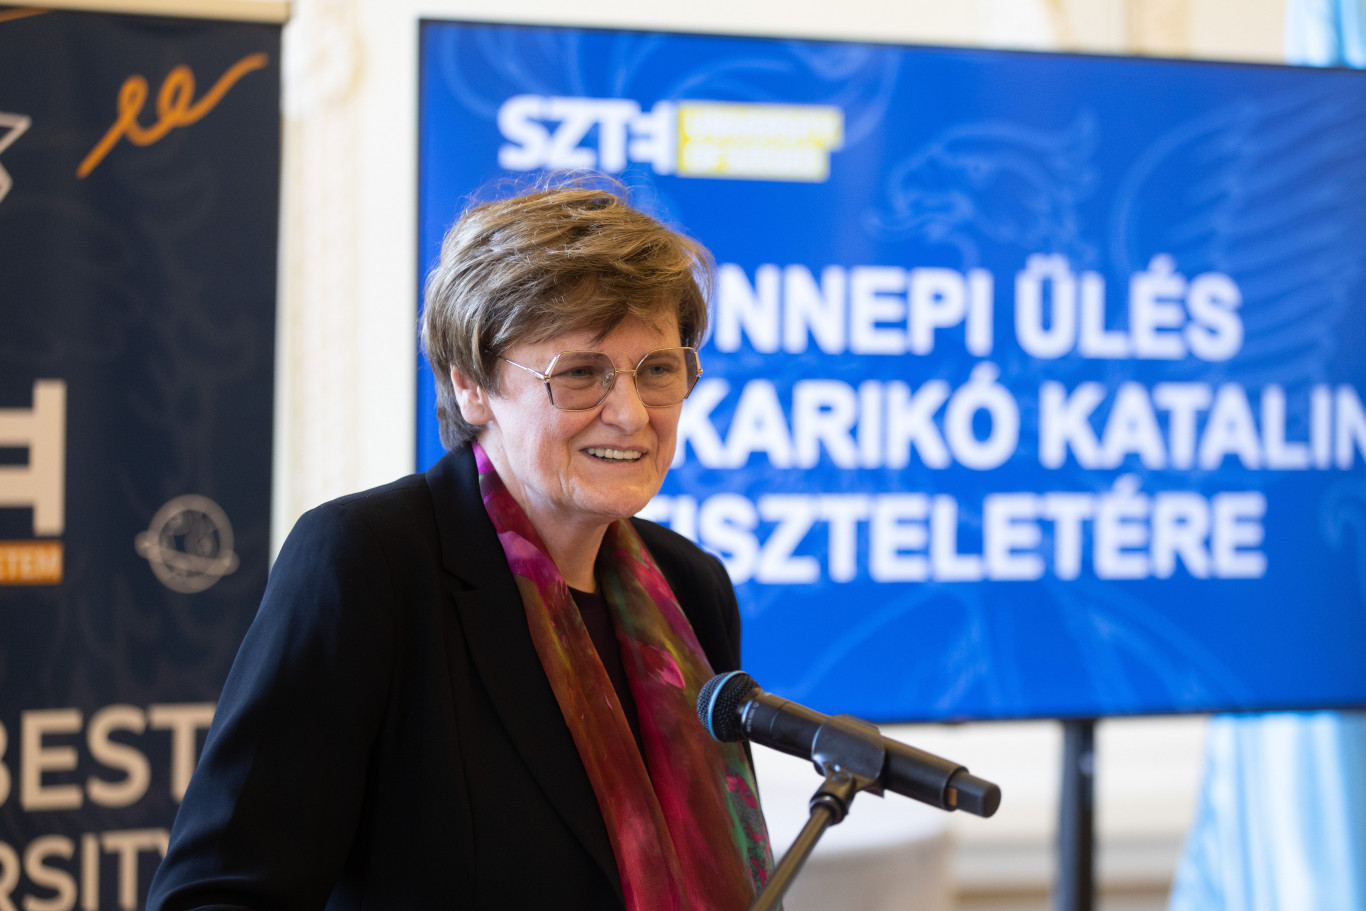 Karikó Katalin a szegedi egyetemnek ajándékozta a Nobel-díját, és megalapította a JATE-díjat